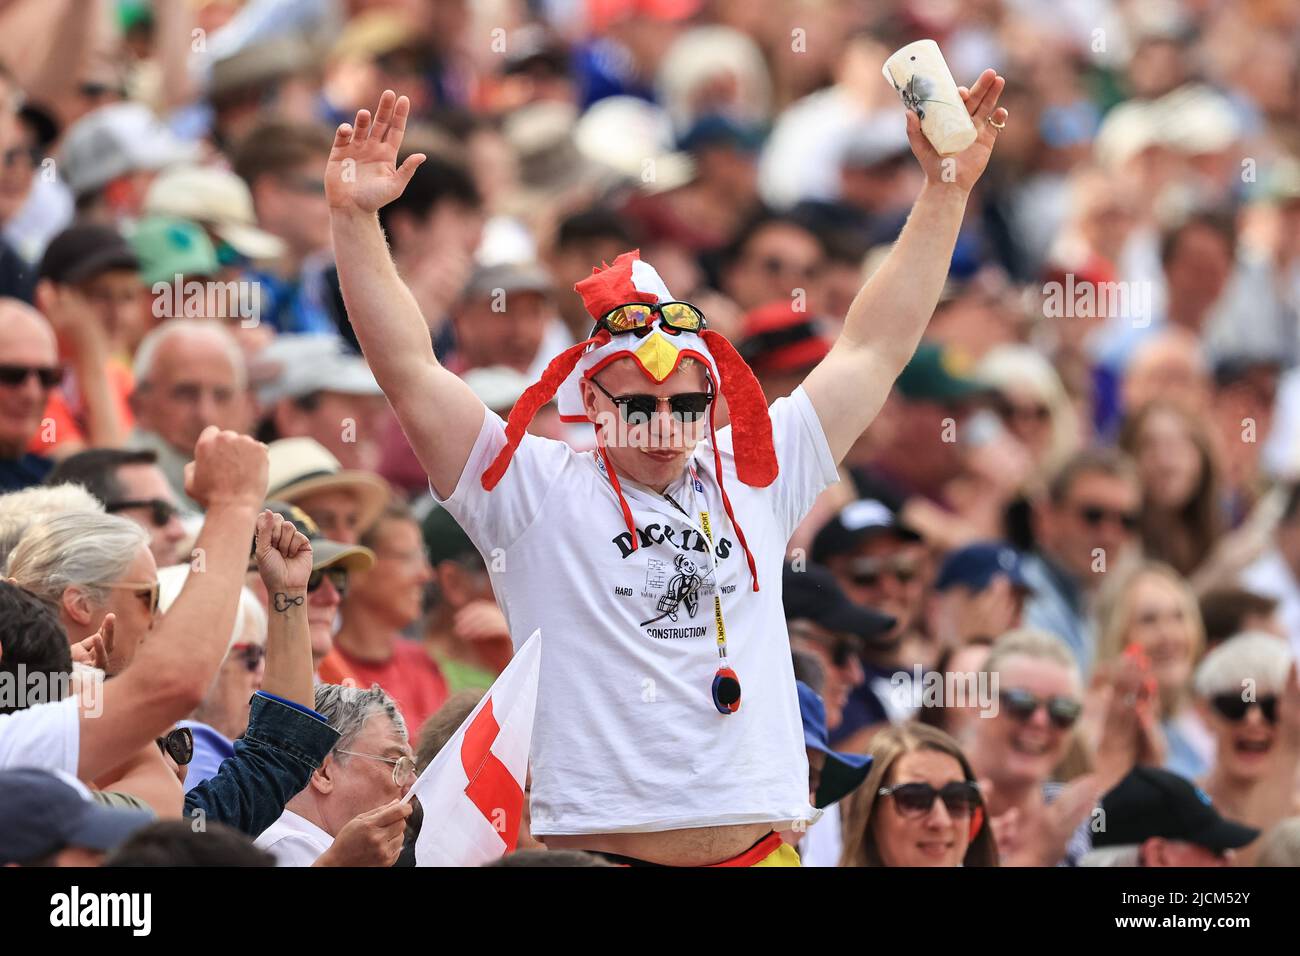 Une Angleterre fan d'une pinte de bière en une seule fois alors qu'il est pris par toute la foule Banque D'Images